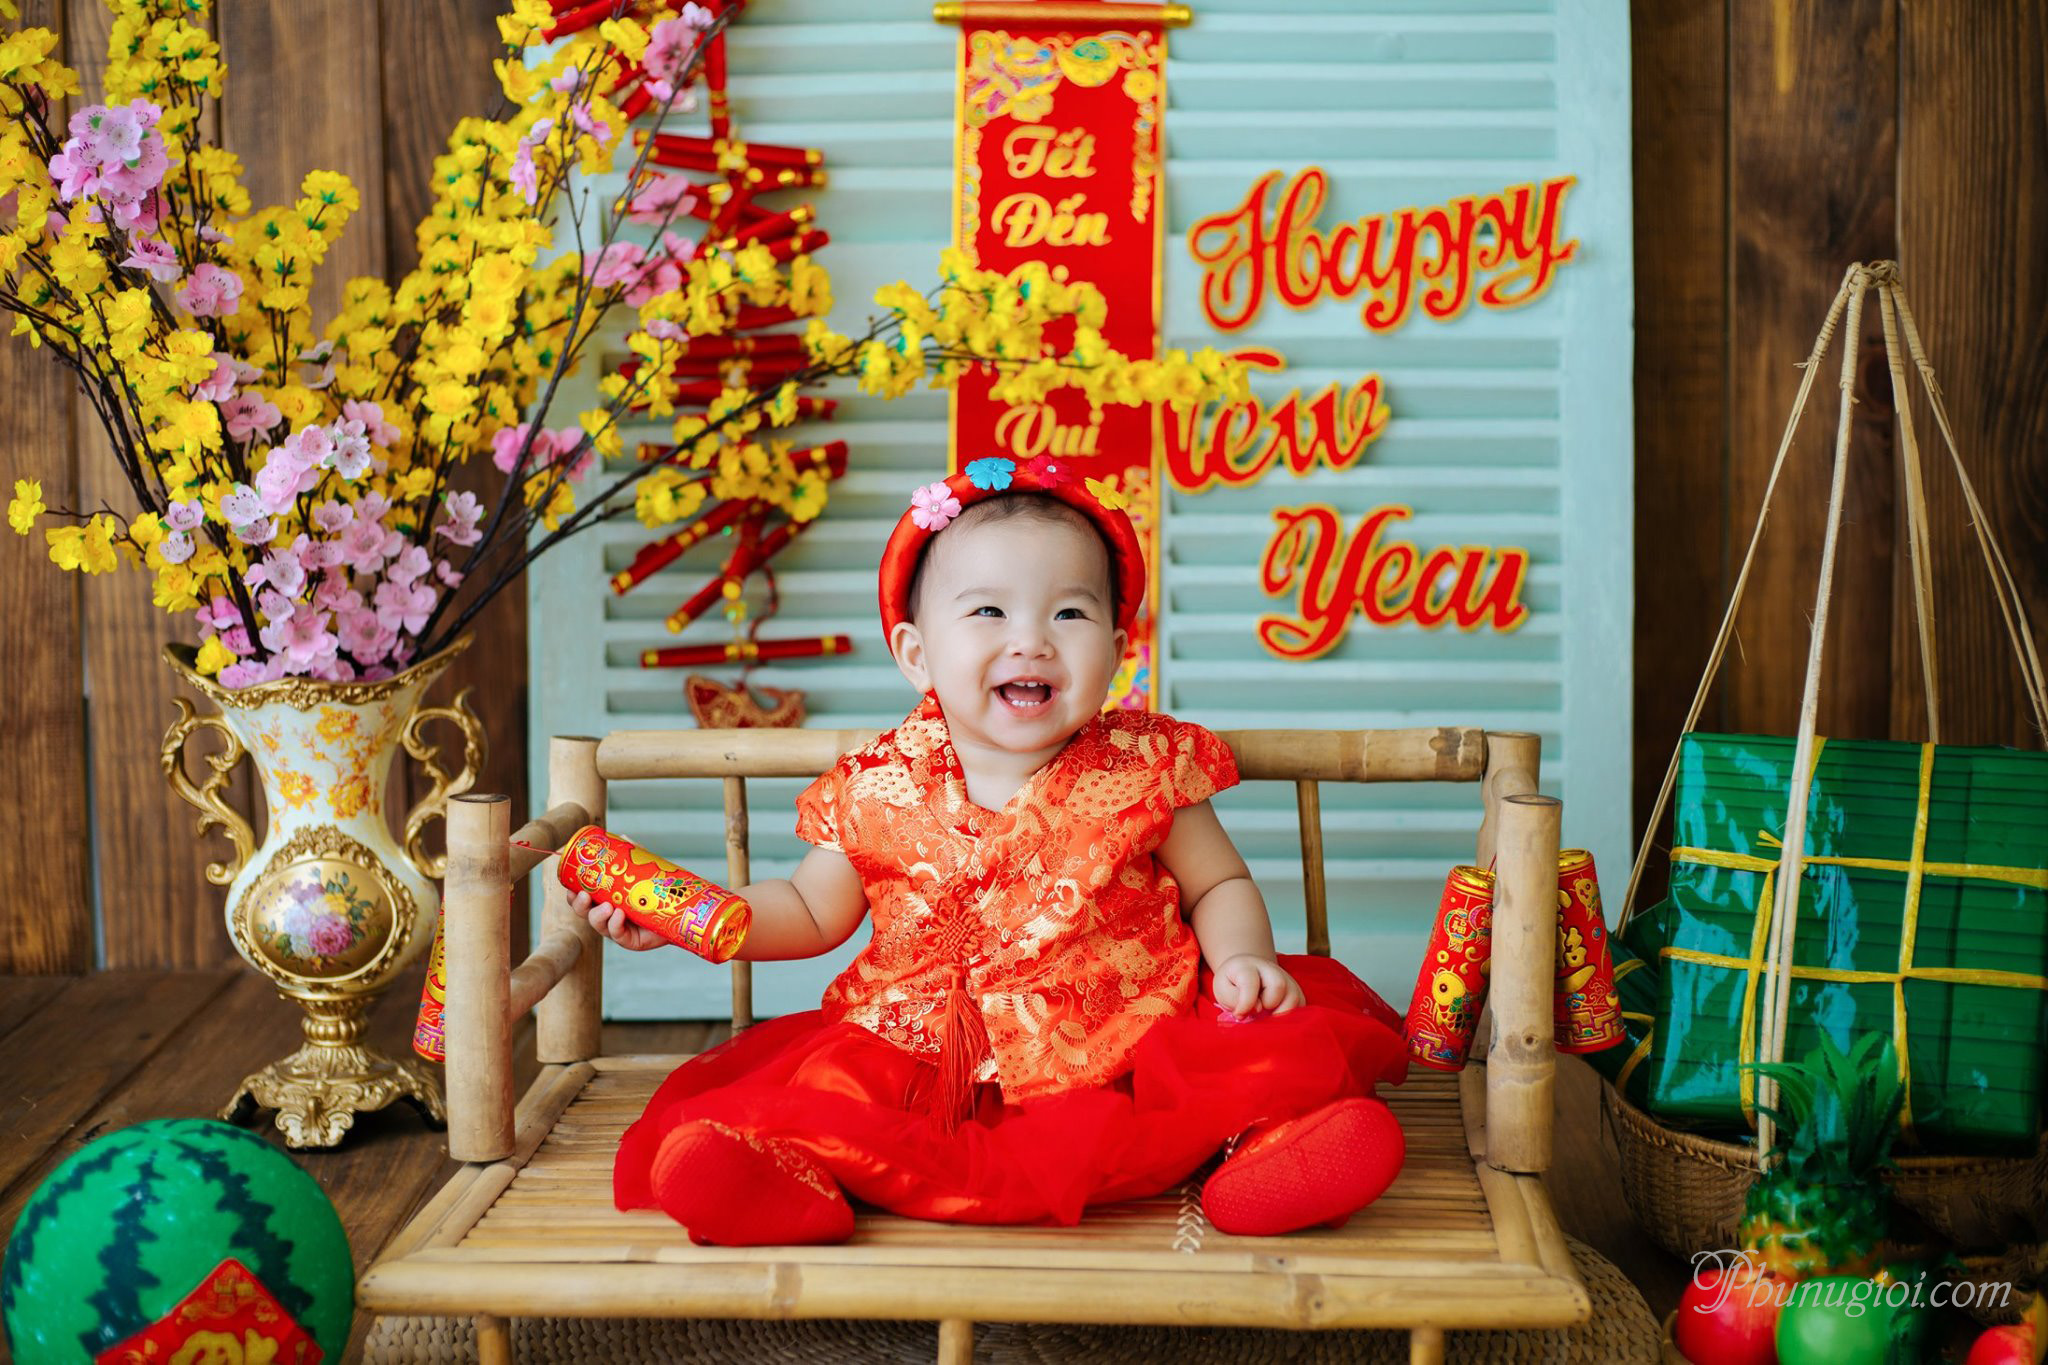 Tết Nguyên đán: Tết Nguyên Đán được xem là lễ hội quan trọng nhất trong năm của người Việt Nam. Thoải mái thưởng thức những món ăn truyền thống, chụp những bức ảnh tuyệt đẹp về nơi cư trú hoặc gia đình để lưu giữ những kỷ niệm khó quên trong dịp lễ này.